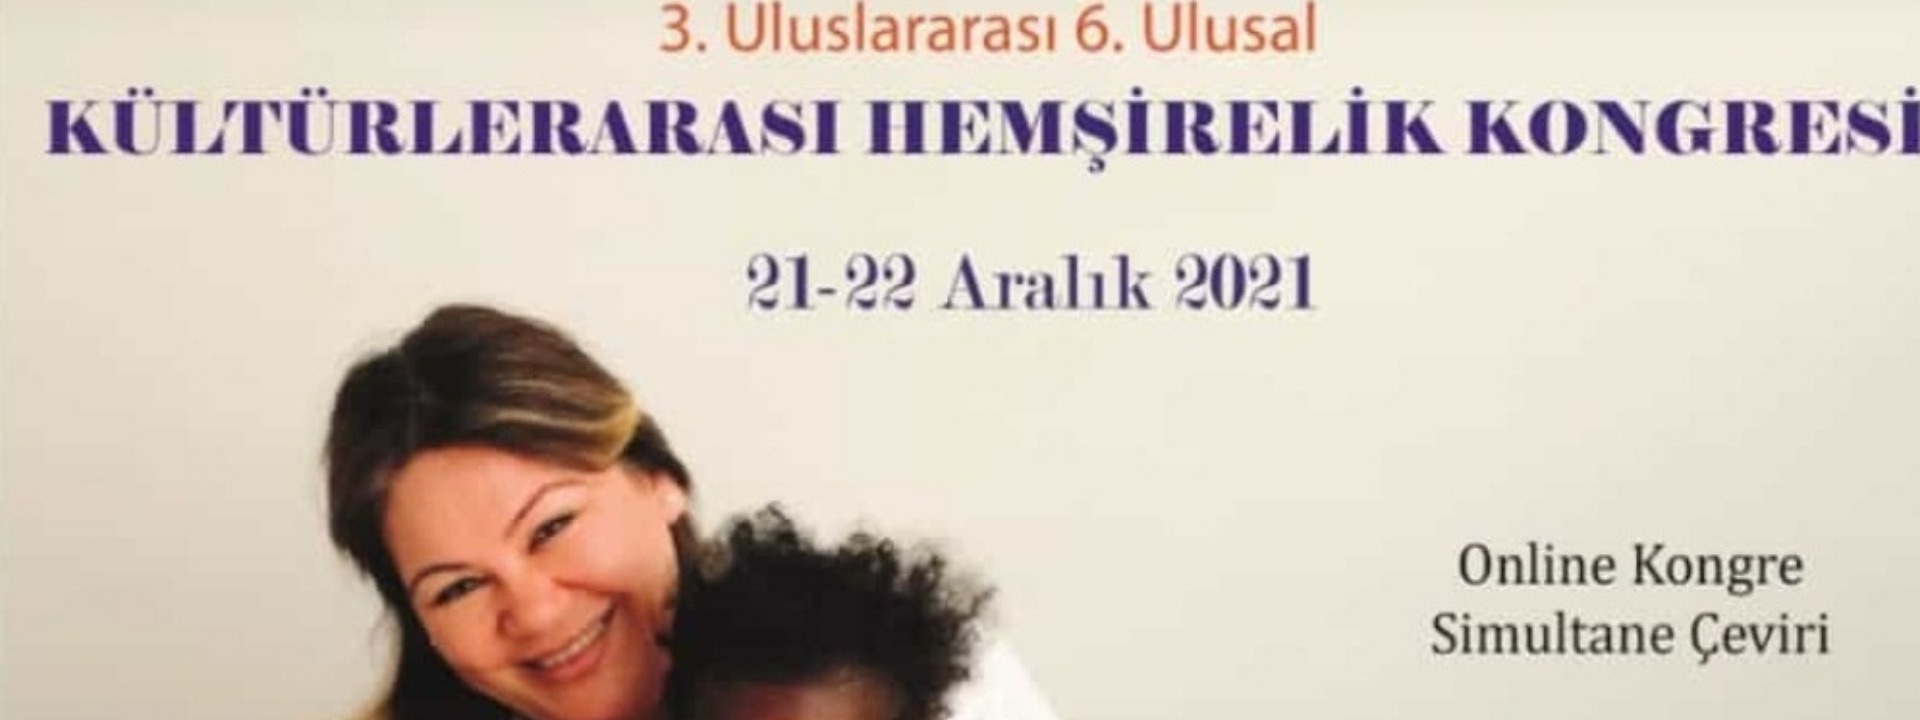 3. Uluslararası 6. Ulsal Kültürlerarası Hemşirelik Kongresi